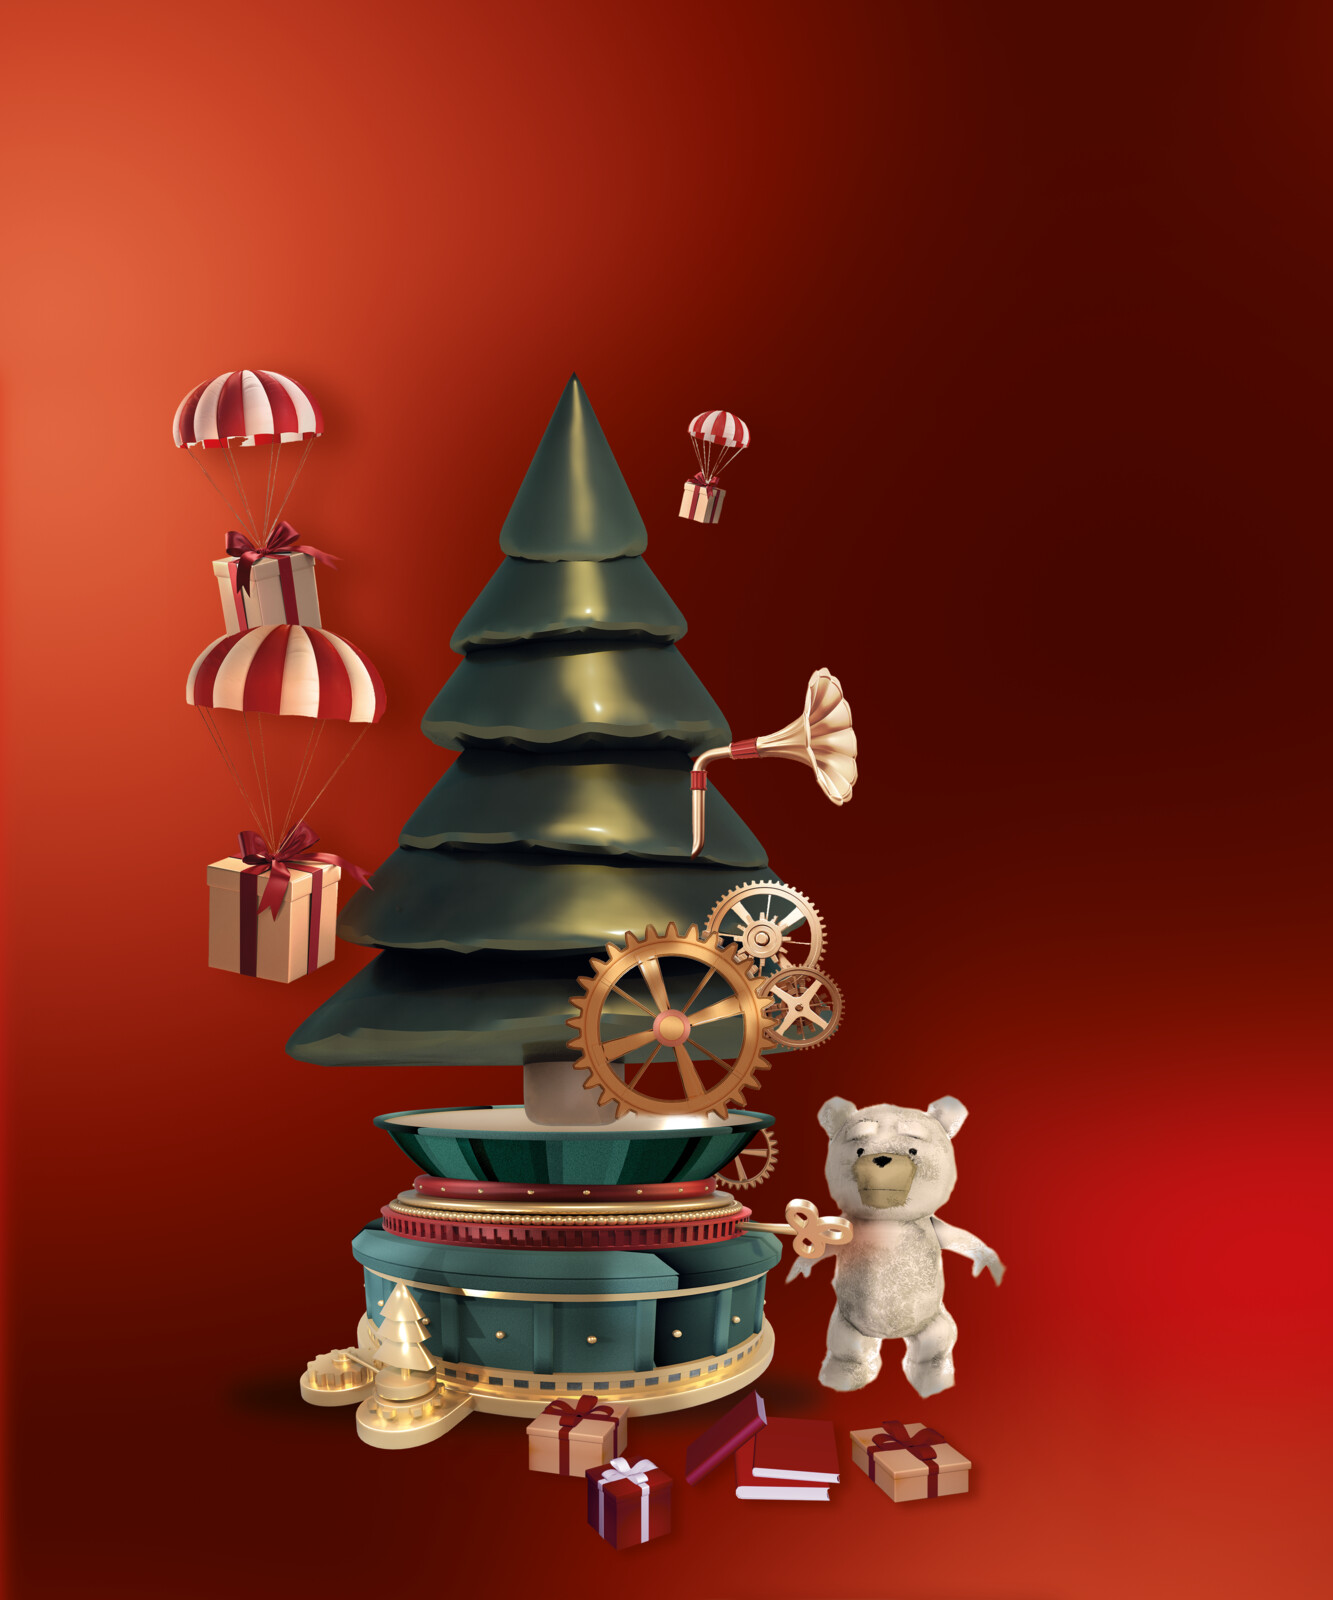 Christmas teddy bear illustration